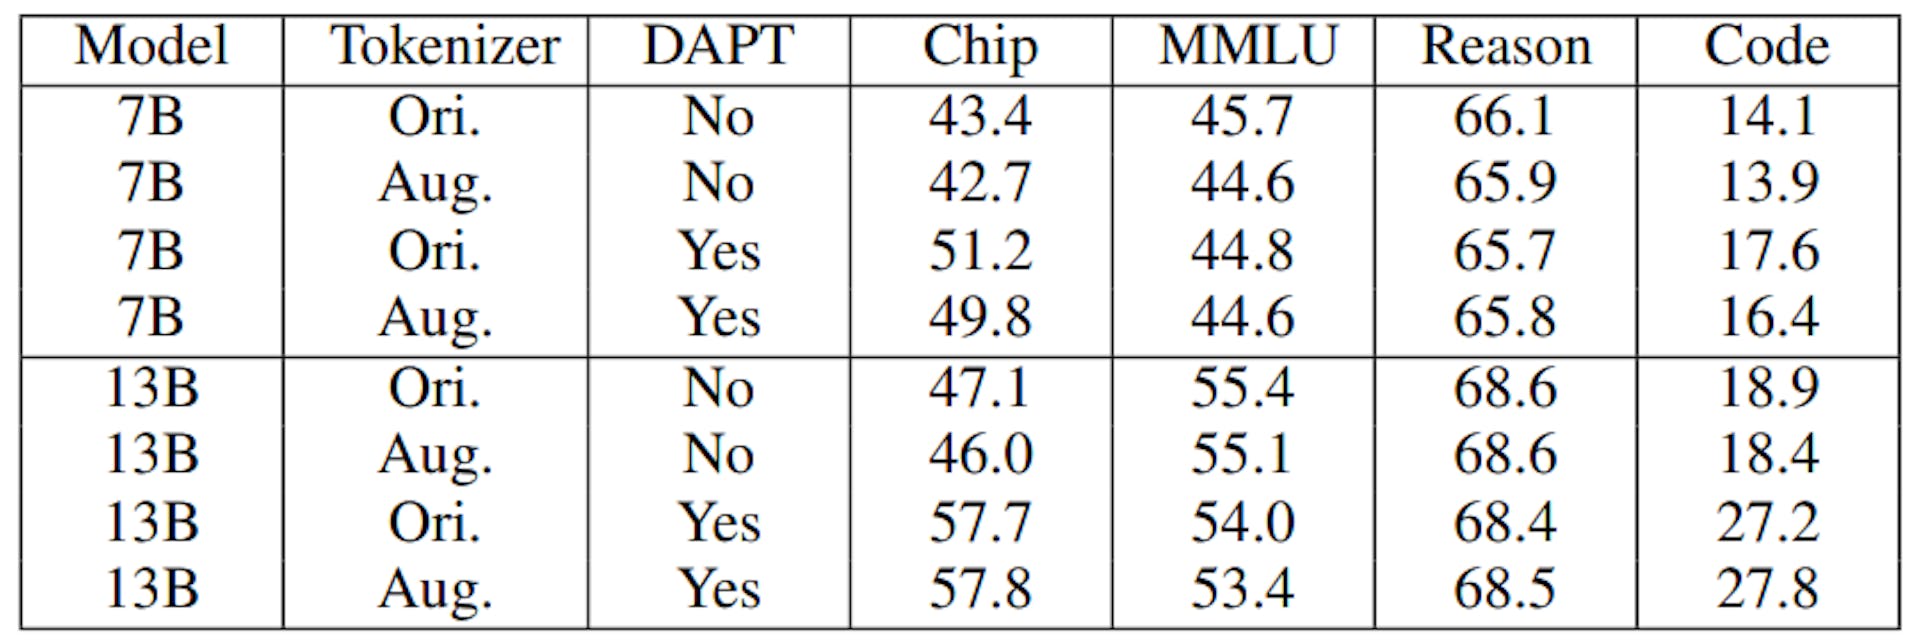 TABLEAU IX : Résultats d'évaluation sur les modèles ChipNeMo avec différents tokenizers. Août indique un tokenizer augmenté et Ori. indiquez en utilisant le tokenizer original LLaMA2. L'utilisation d'un tokenizer augmenté sans DAPT correspond à l'initialisation du modèle comme dans la section III-A.